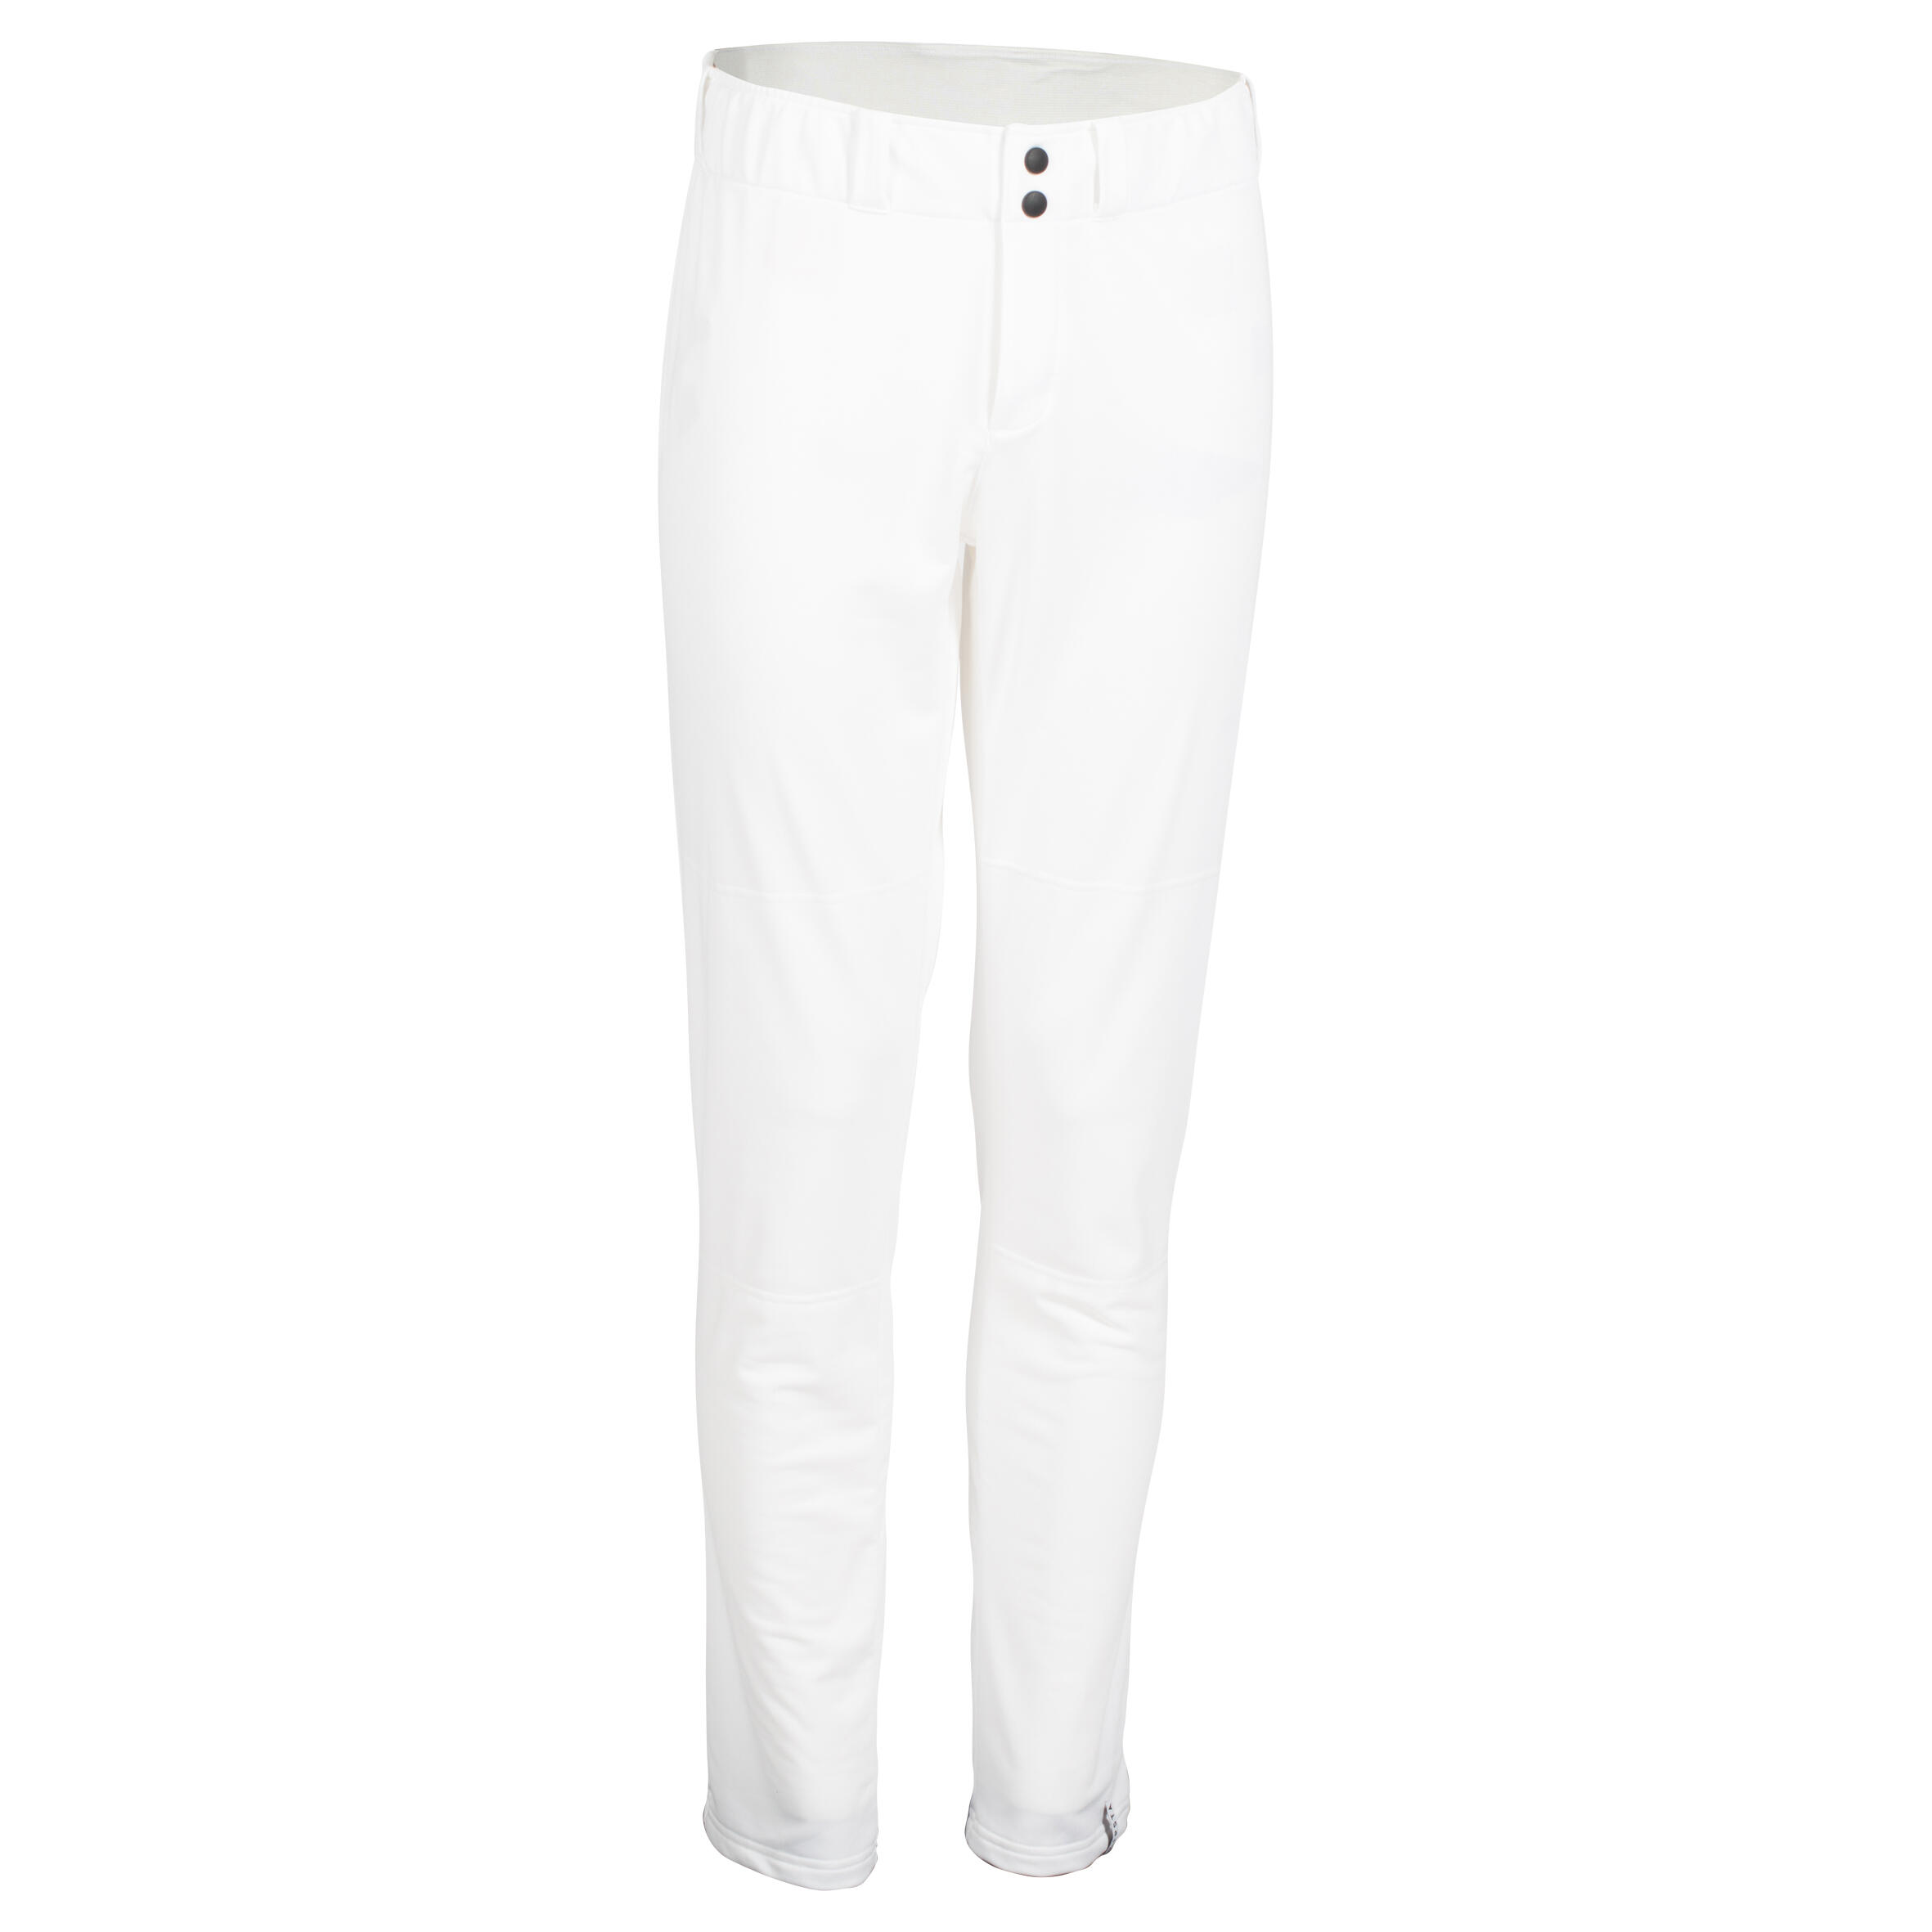 KIPSTA BA 550 Adult Baseball Pants - White